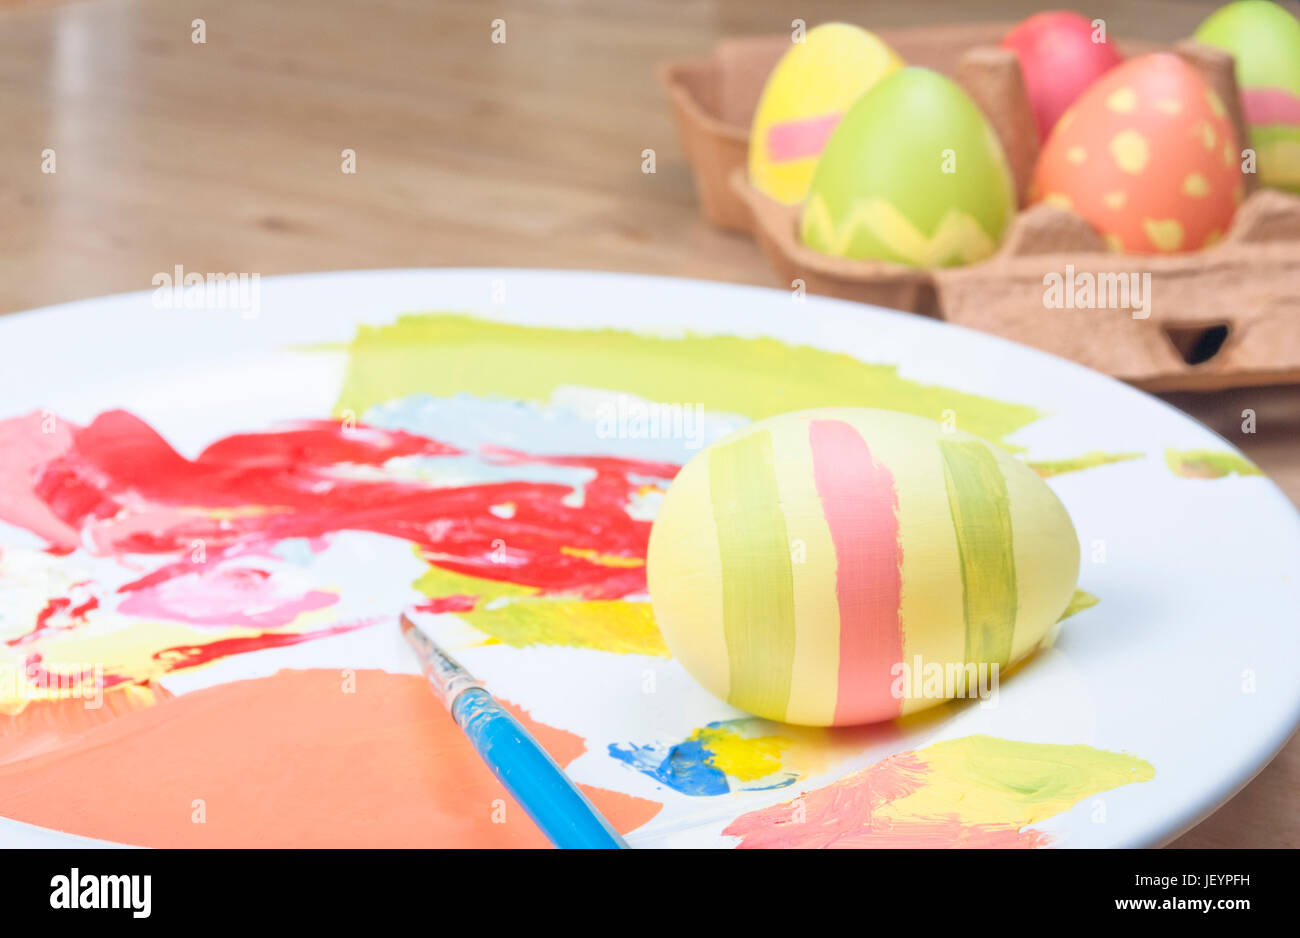 Eine gemütliche Osterei-Malerei-Szene auf einem Holztisch.  Fertige Eiern in einem Karton, Ei-in-Progress, Farben und Pinsel auf einer China-Teller-Palette in Stockfoto